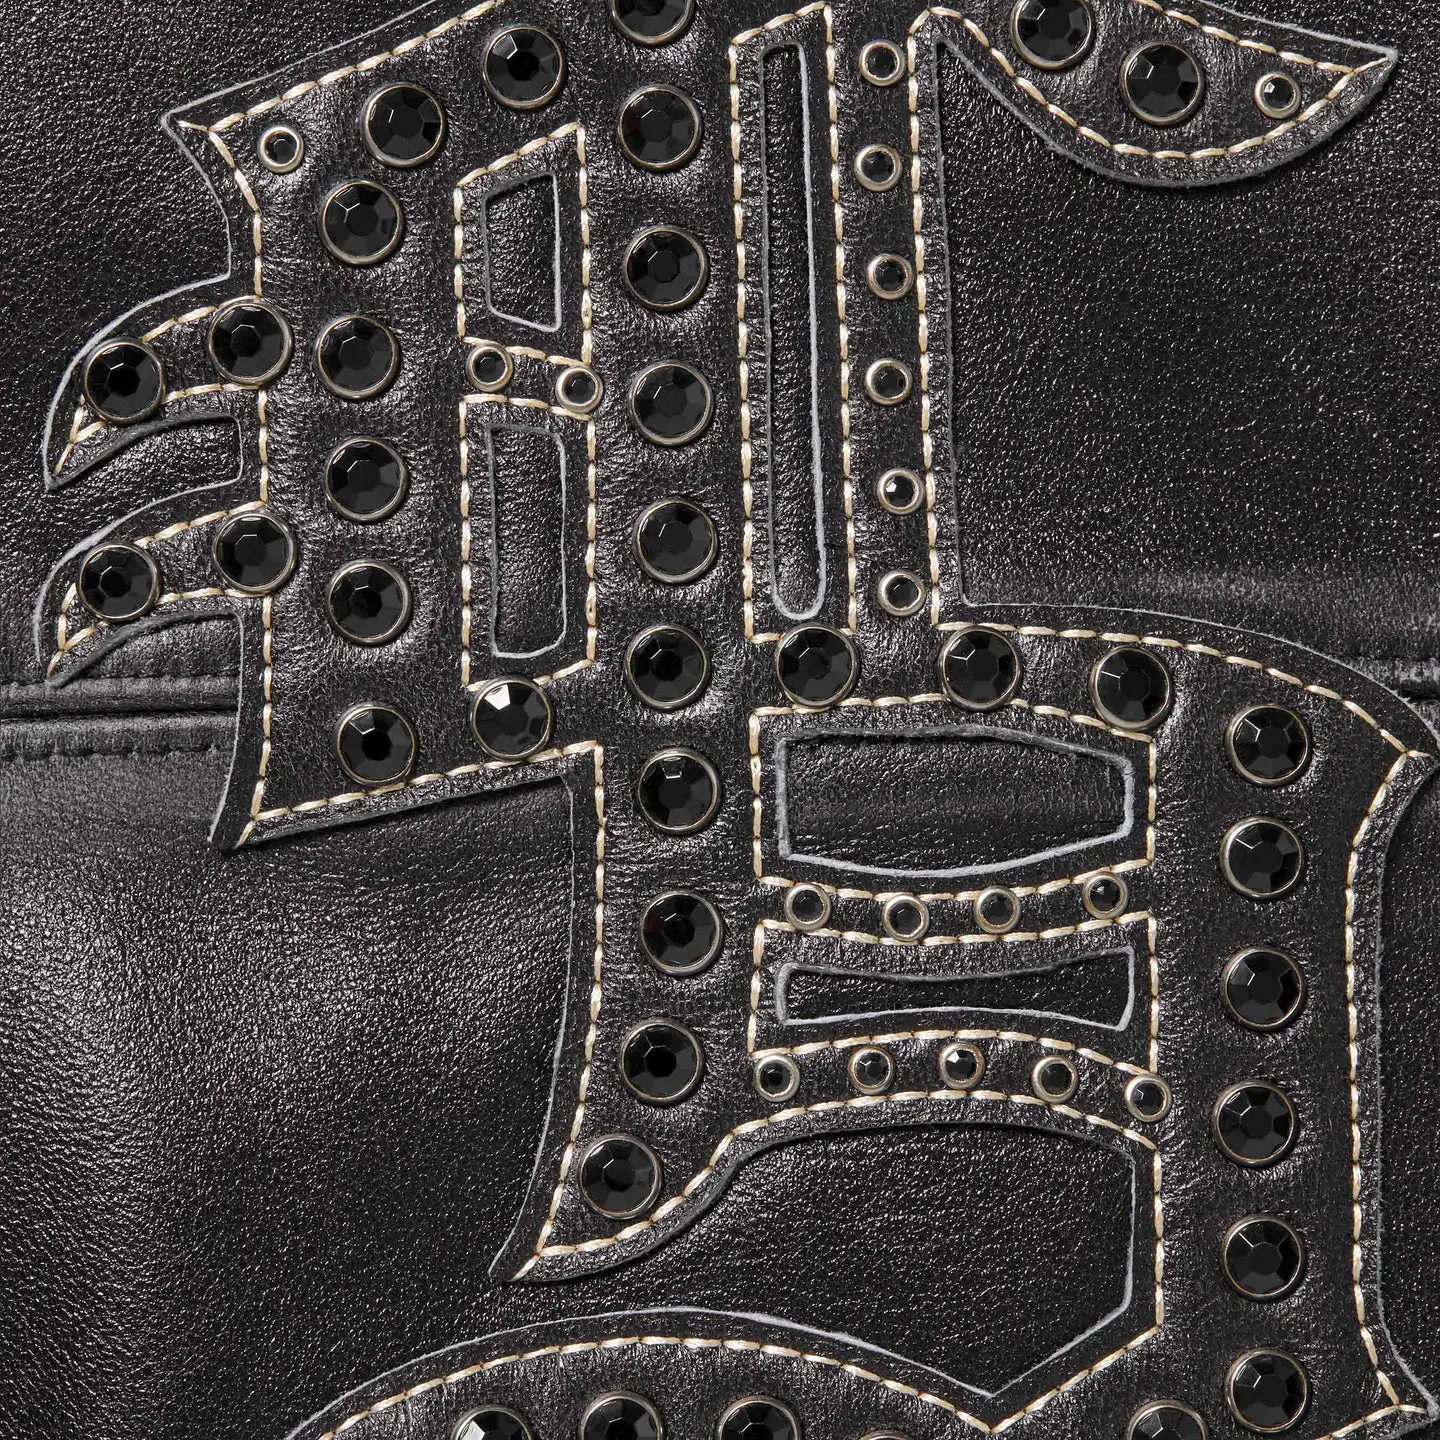 Supreme Gem Studded Leather Jacket